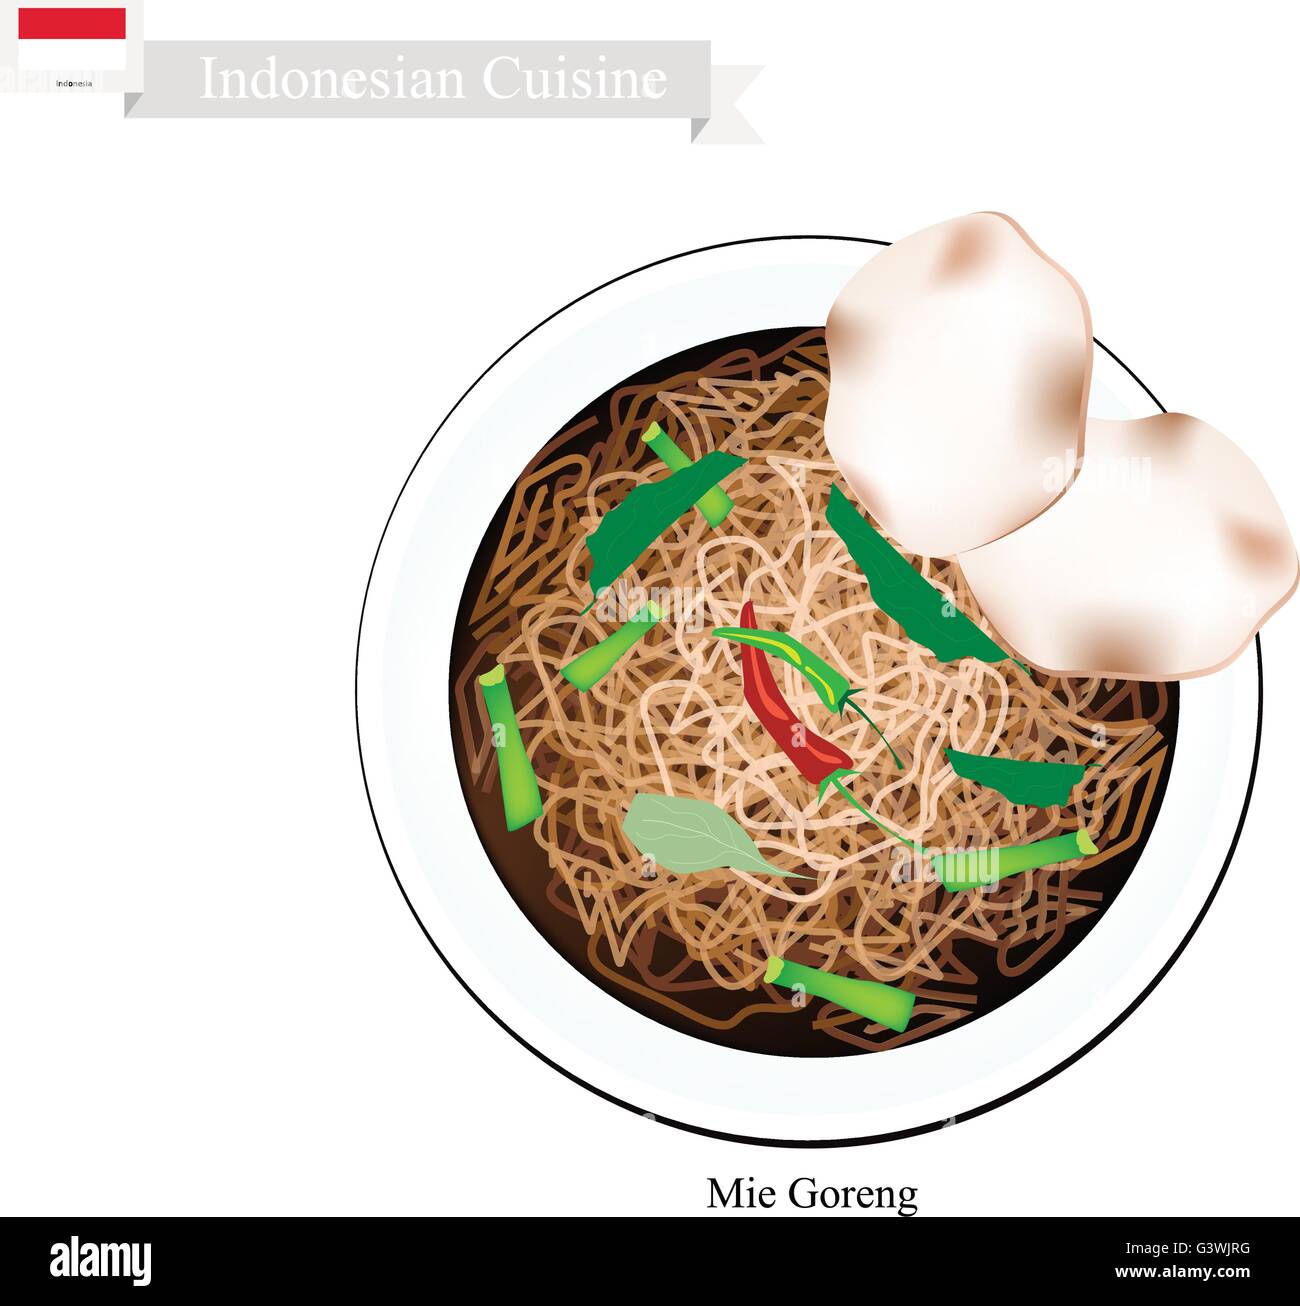 La cuisine indonésienne, Mie Goreng ou traditionnelles nouilles frites avec de la viande. L'un des plats les plus populaires en Indonésie. Illustration de Vecteur